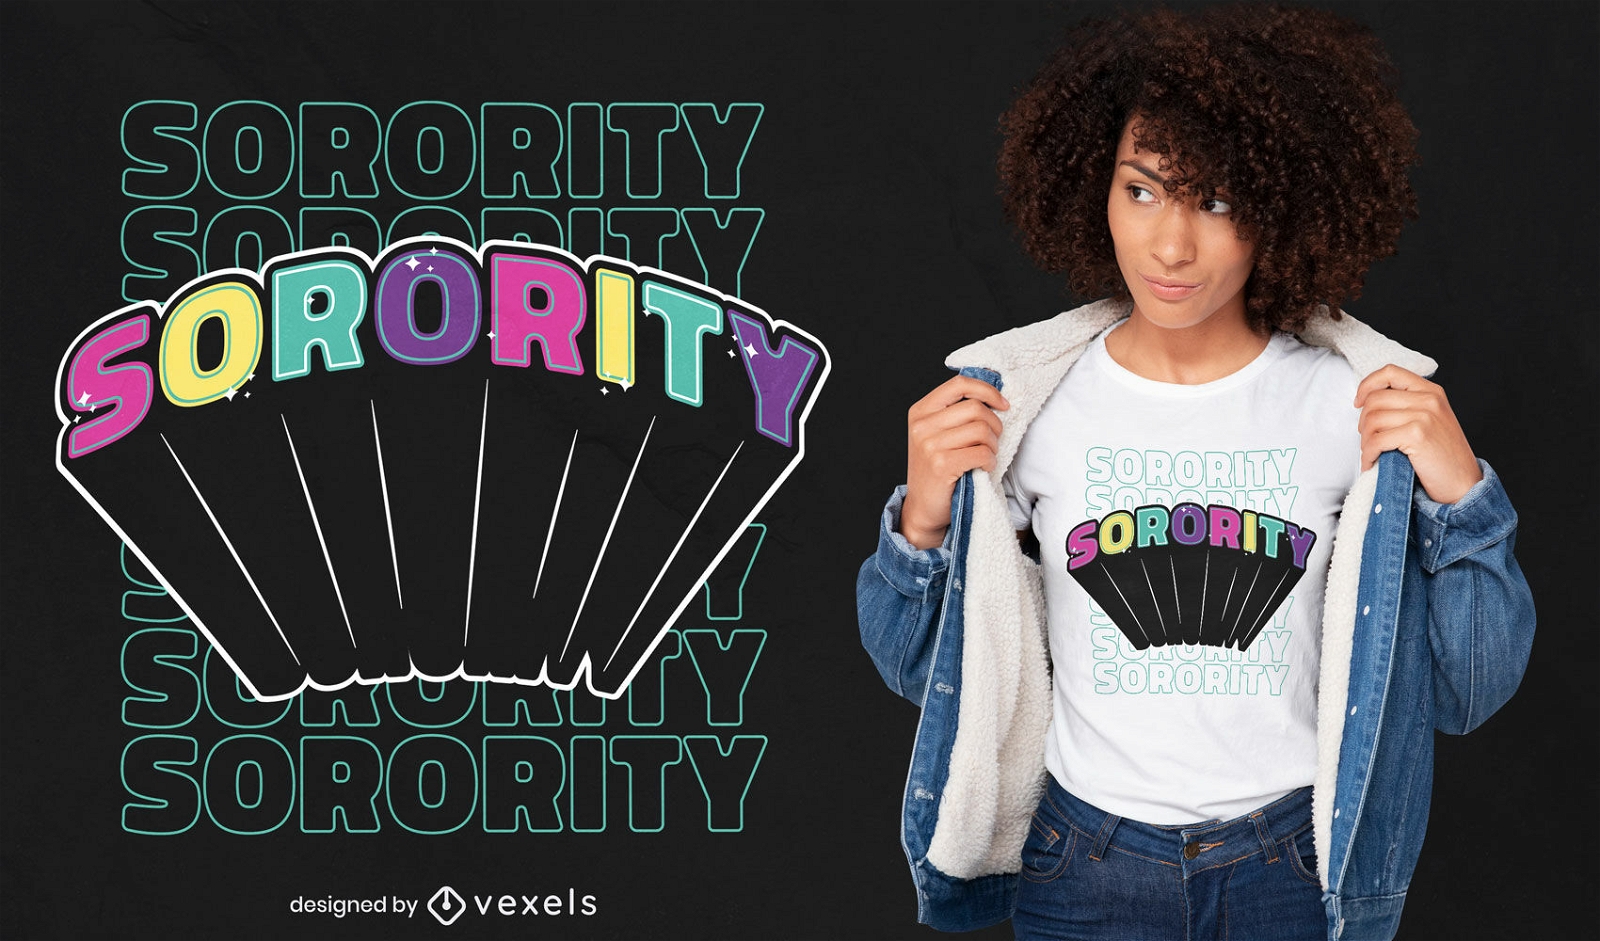 Sorority feminist t-shirt design